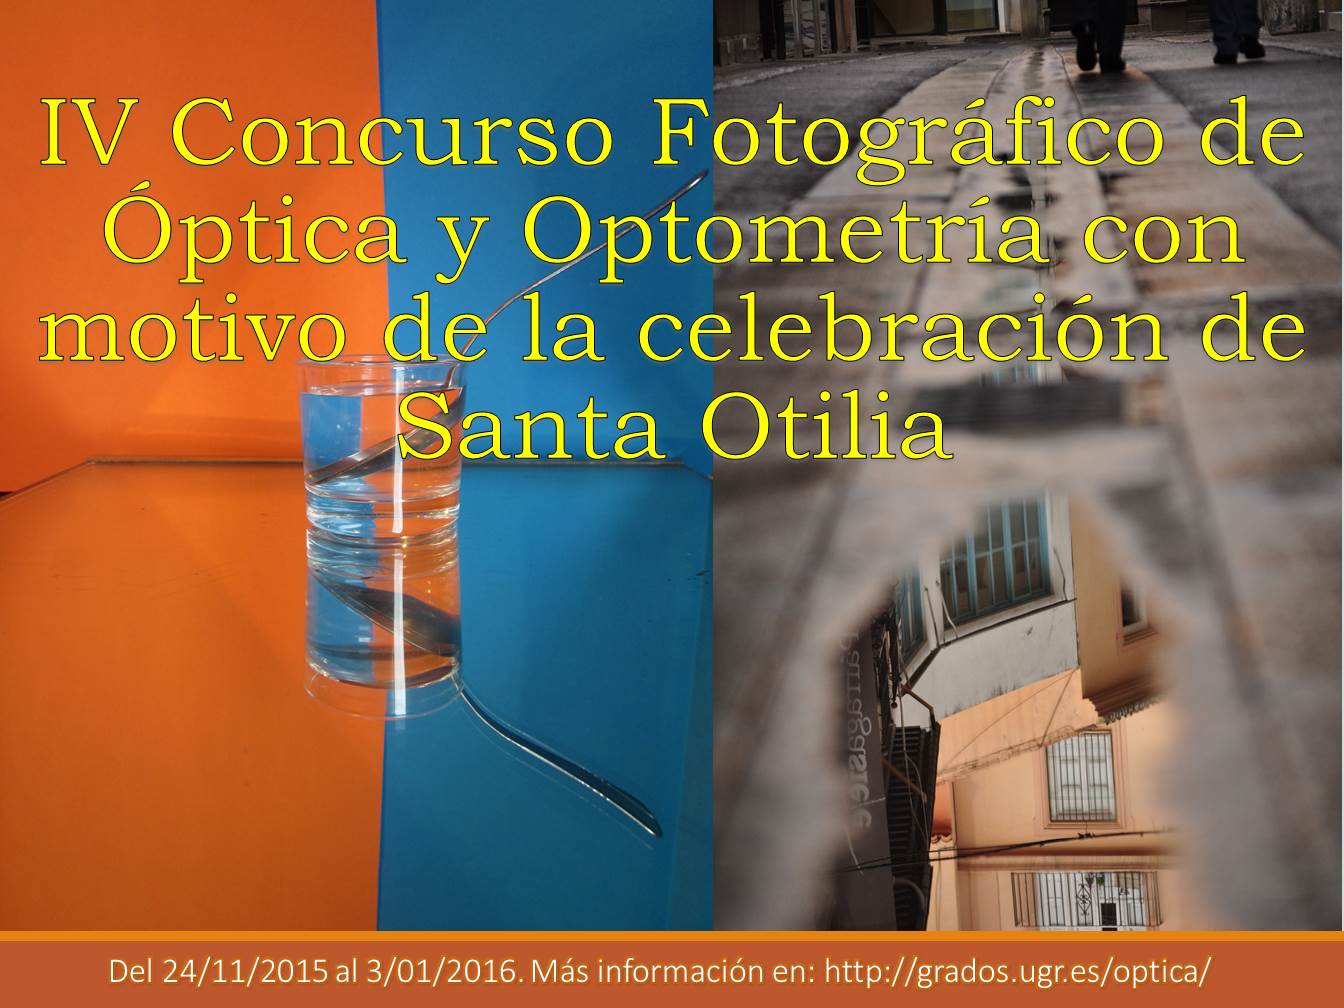 IV Concurso Fotográfico de Óptica y Optometría con motivo de la celebración de Santa Otilia